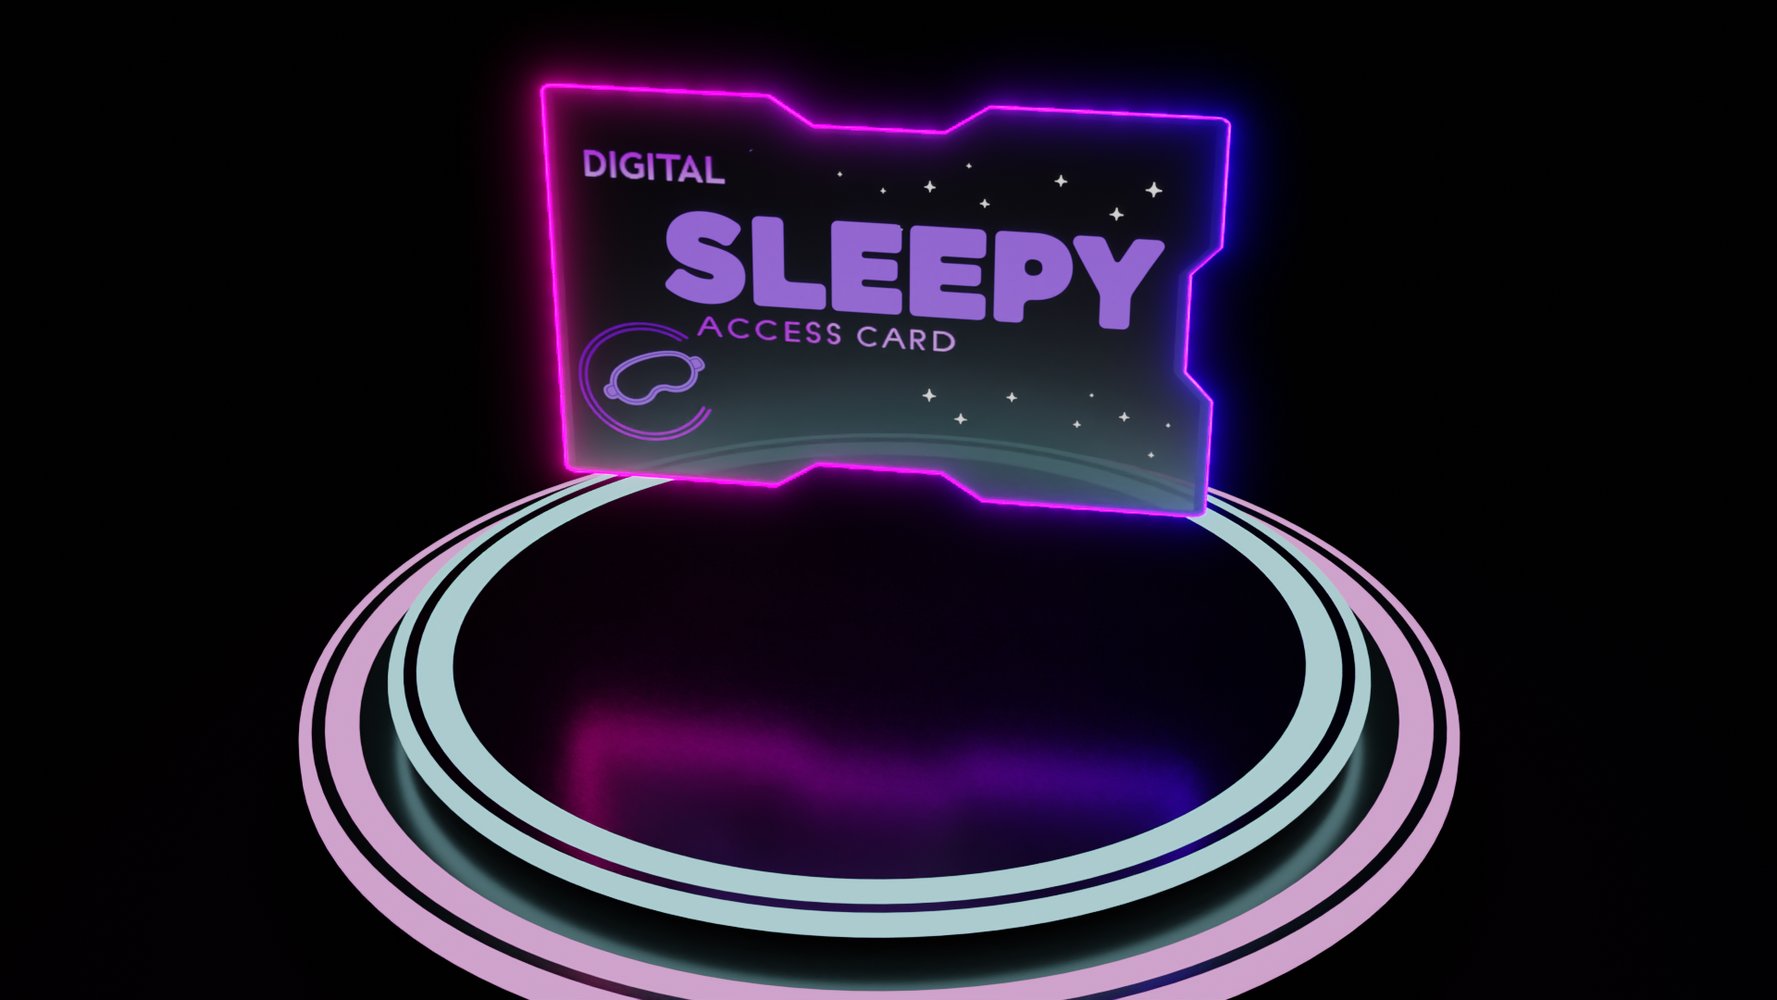 SLEEPY Access Cards